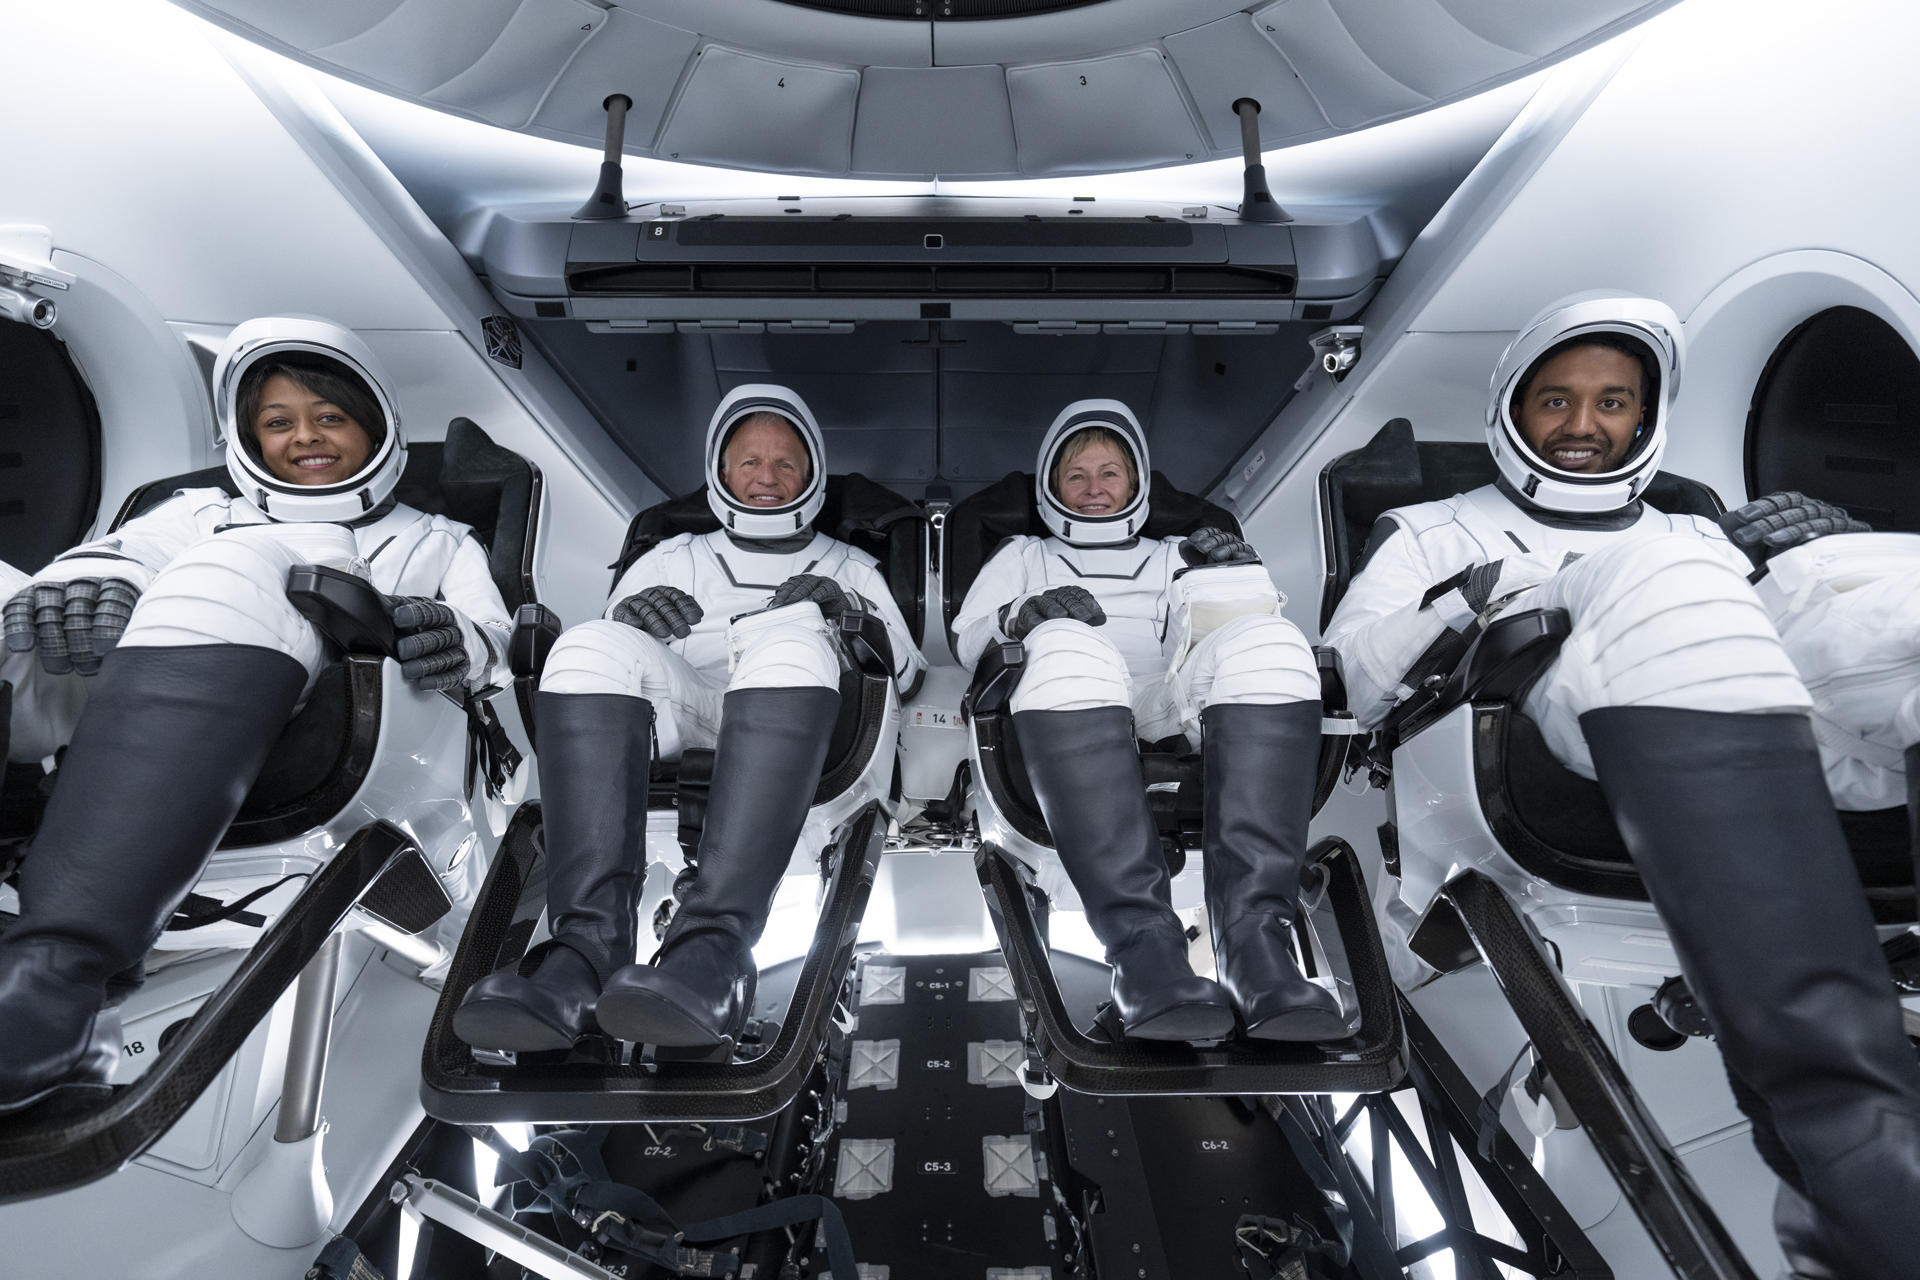 Fotografía del 19 de mayo cedida por Axiom Space donde aparecen los cuatro astronautas de la misión tripulada Ax-2, la comandante Peggy Whitson (2d), el piloto John Shoffner (2i), y los especialistas de la misión Rayyanah Barnawi (i), y Ali Alqarni (d), dentro de la nave de tripulación SpaceX Dragon Freedom en Cabo Cañaveral, Florida (EE.UU.). EFE/Axiom Space /SOLO USO EDITORIAL/NO VENTAS/SOLO DISPONIBLE PARA ILUSTRAR LA NOTICIA QUE ACOMPAÑA/CRÉDITO OBLIGATORIO
